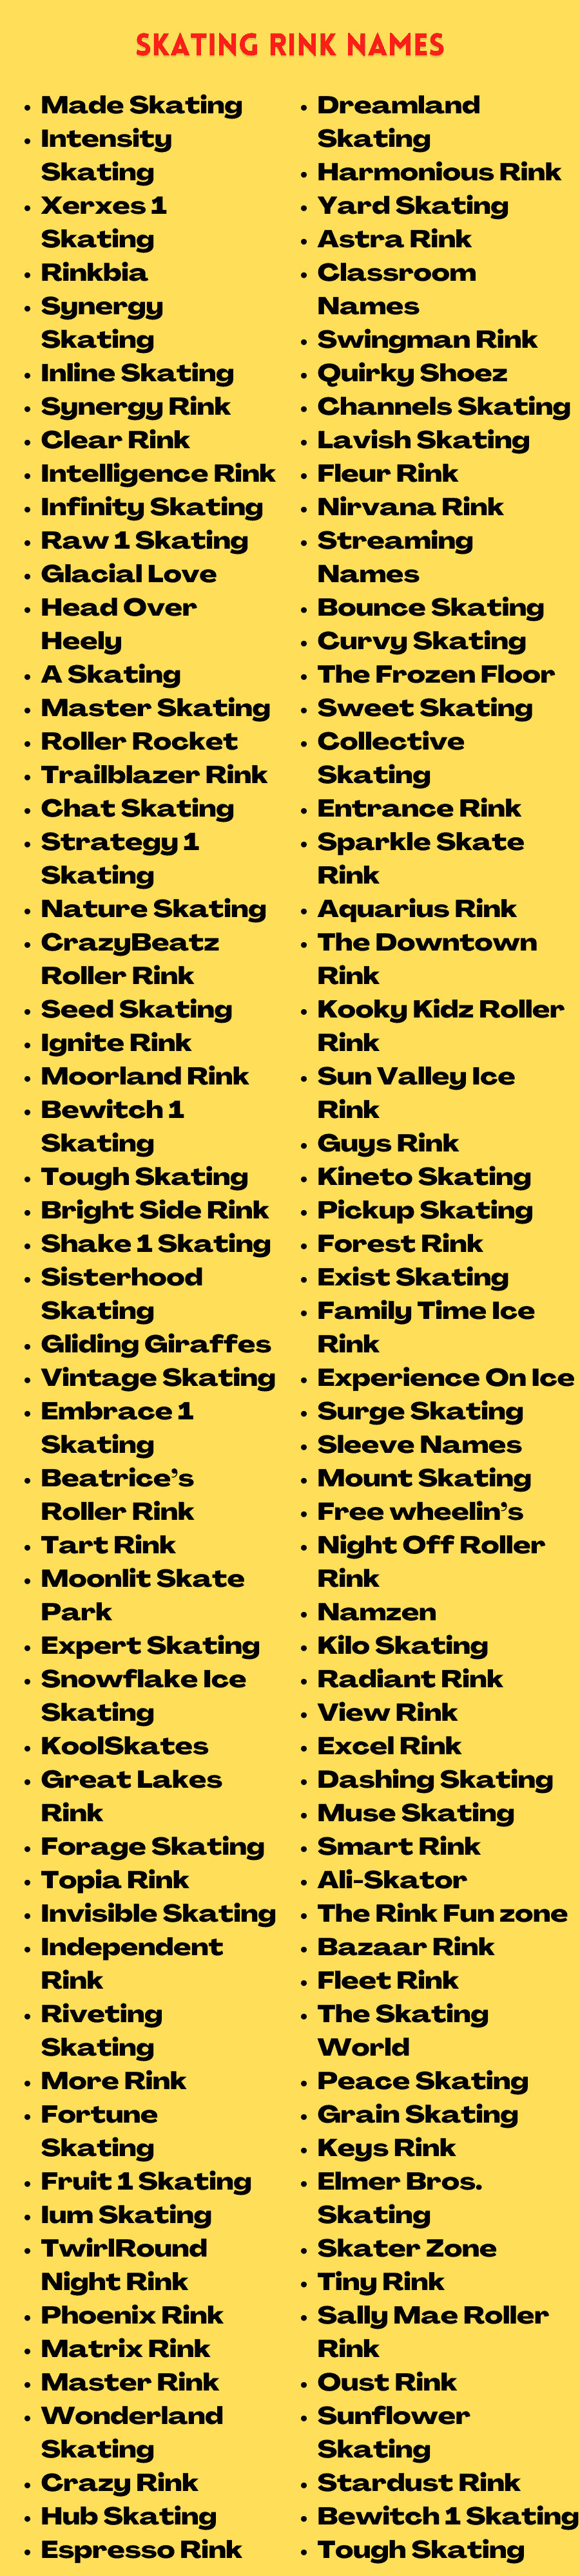 Skating Rink Names